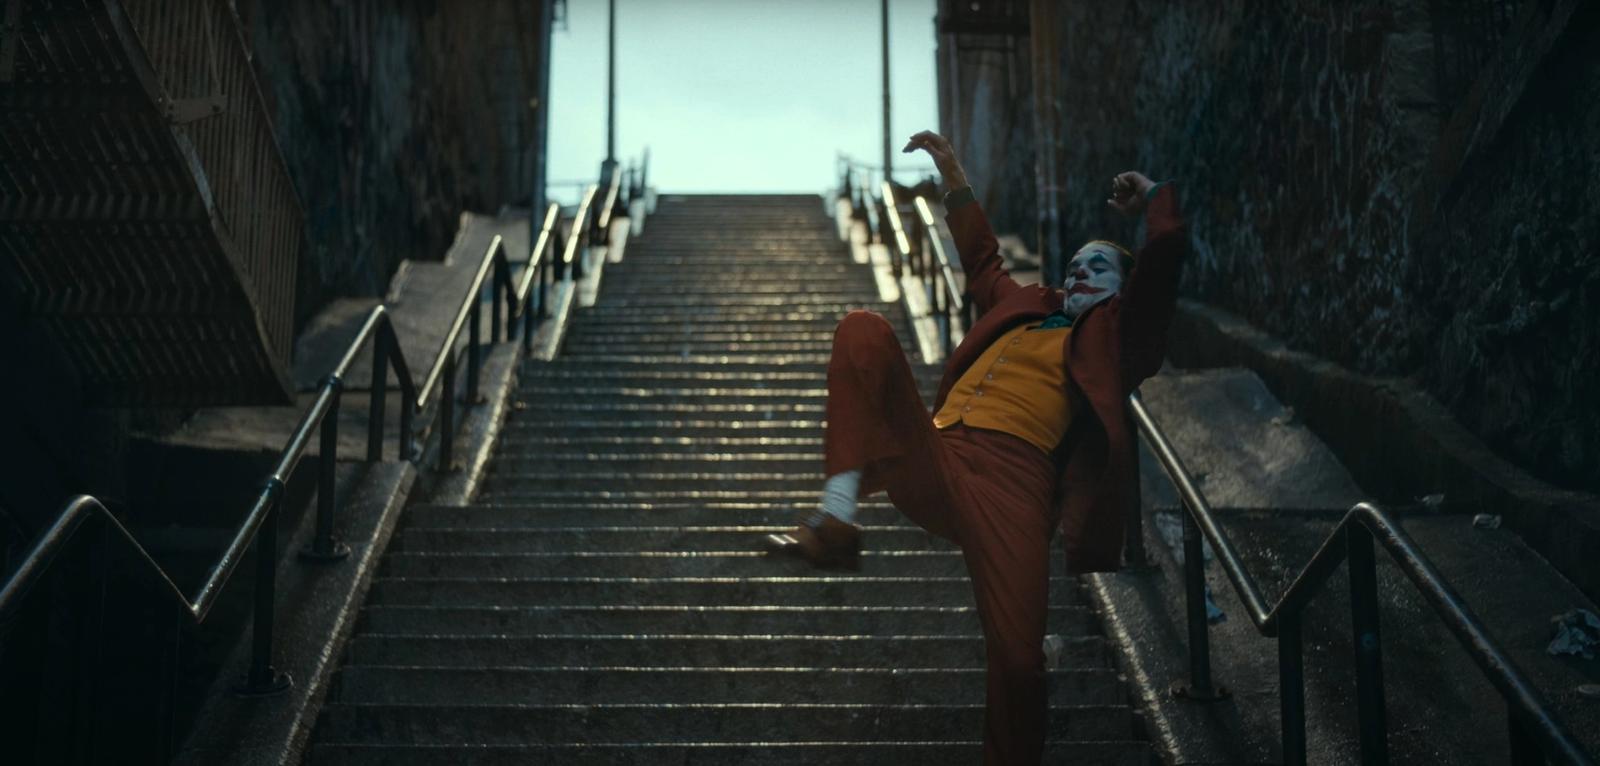 Joker (2019) stairs dancing scene